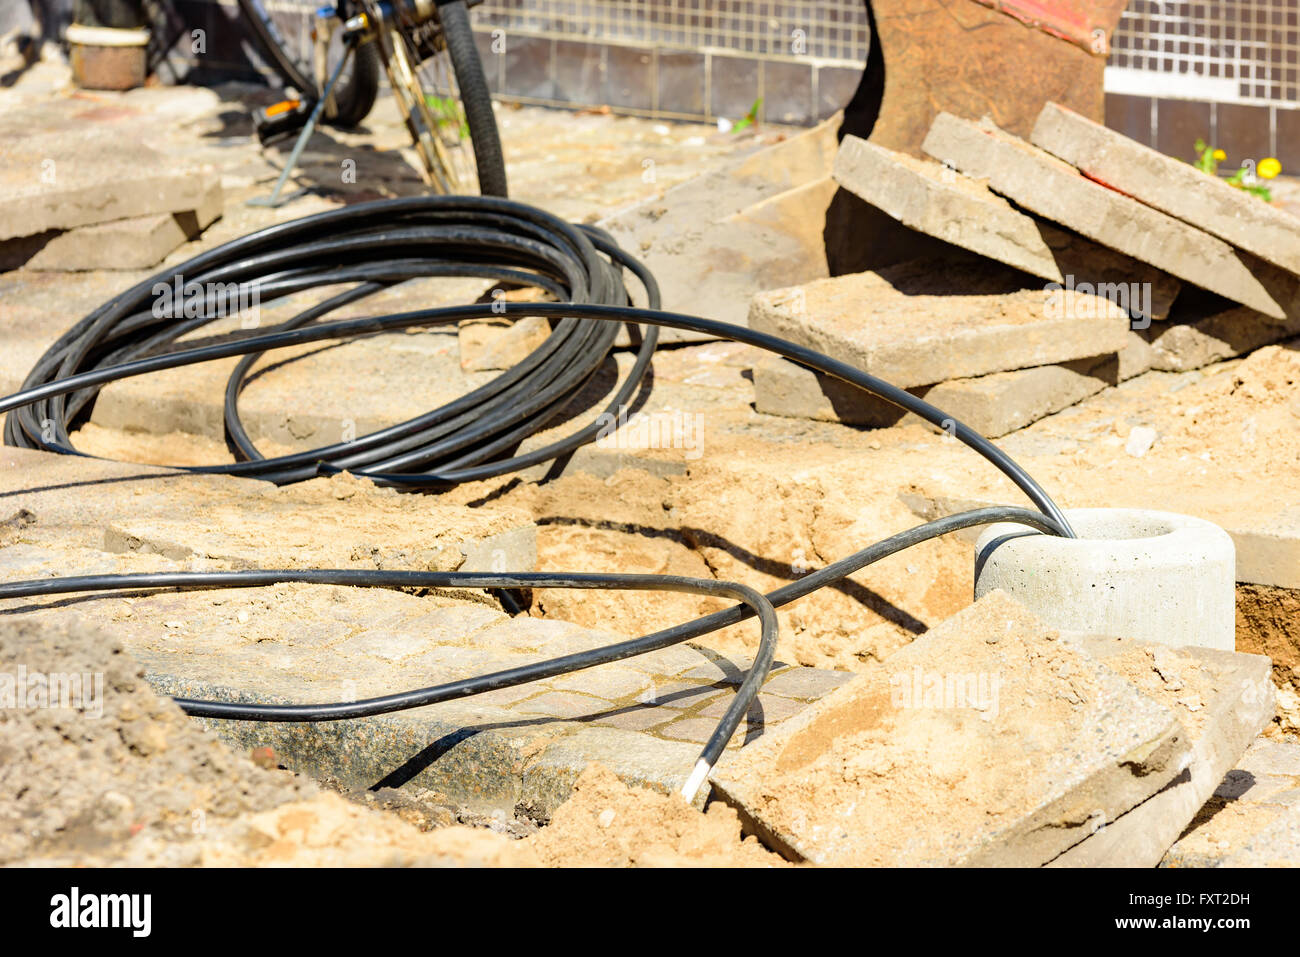 Lund, Suecia - 11 de abril de 2016: cable eléctrico entrar en un agujero en el suelo de hormigón donde una farola va a ser instalado. Foto de stock